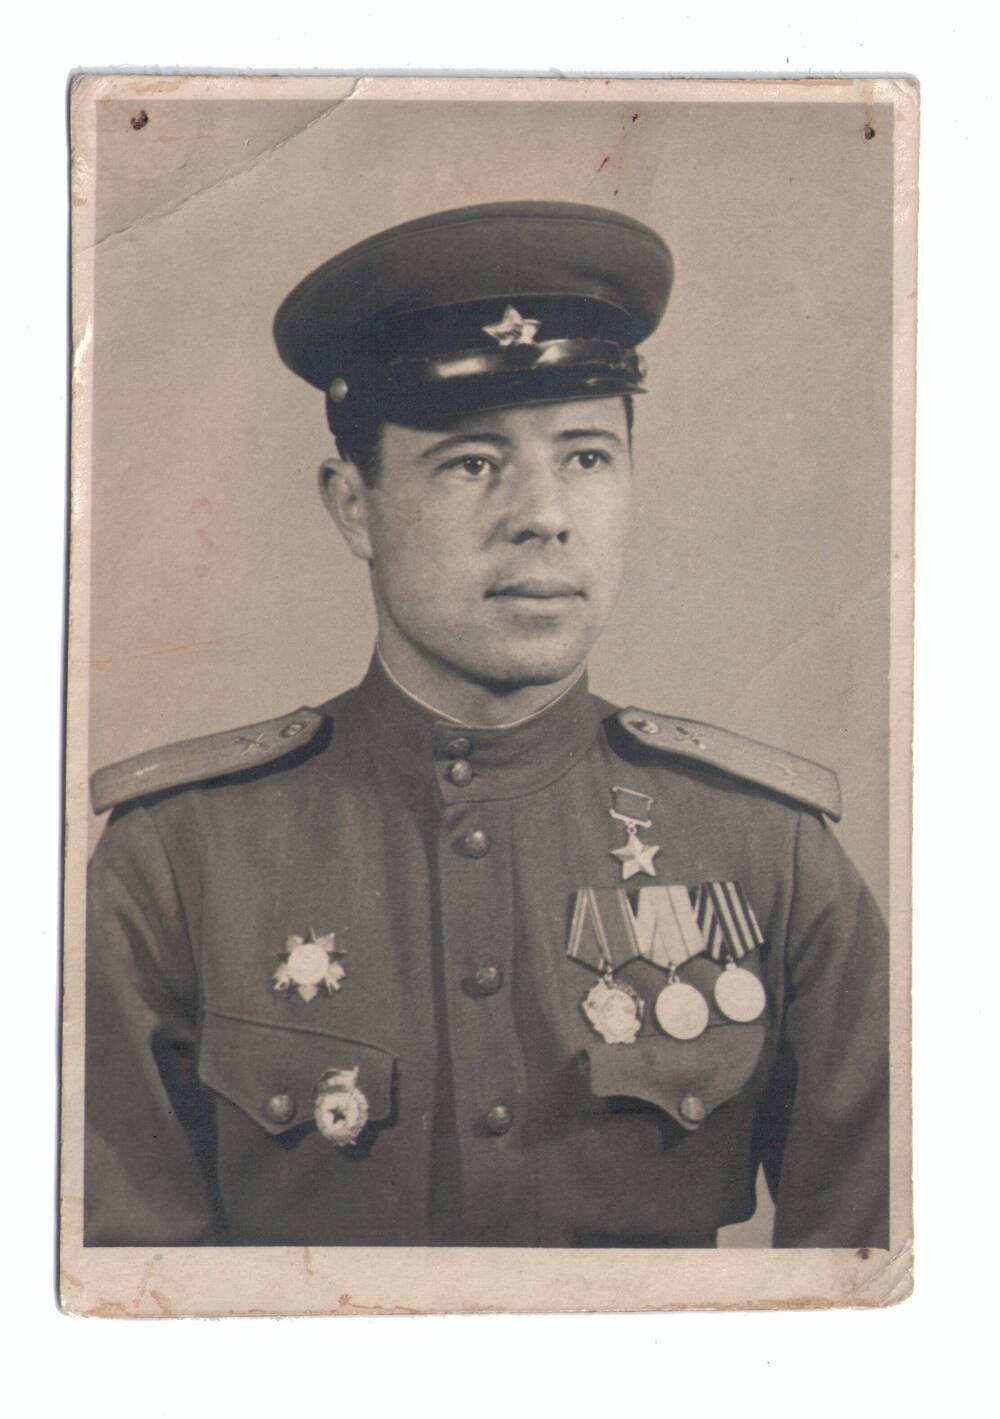 Фотография.
Сорокин Борис Григорьевич, участник Великой 
Отечественной войны, герой Советского Союза